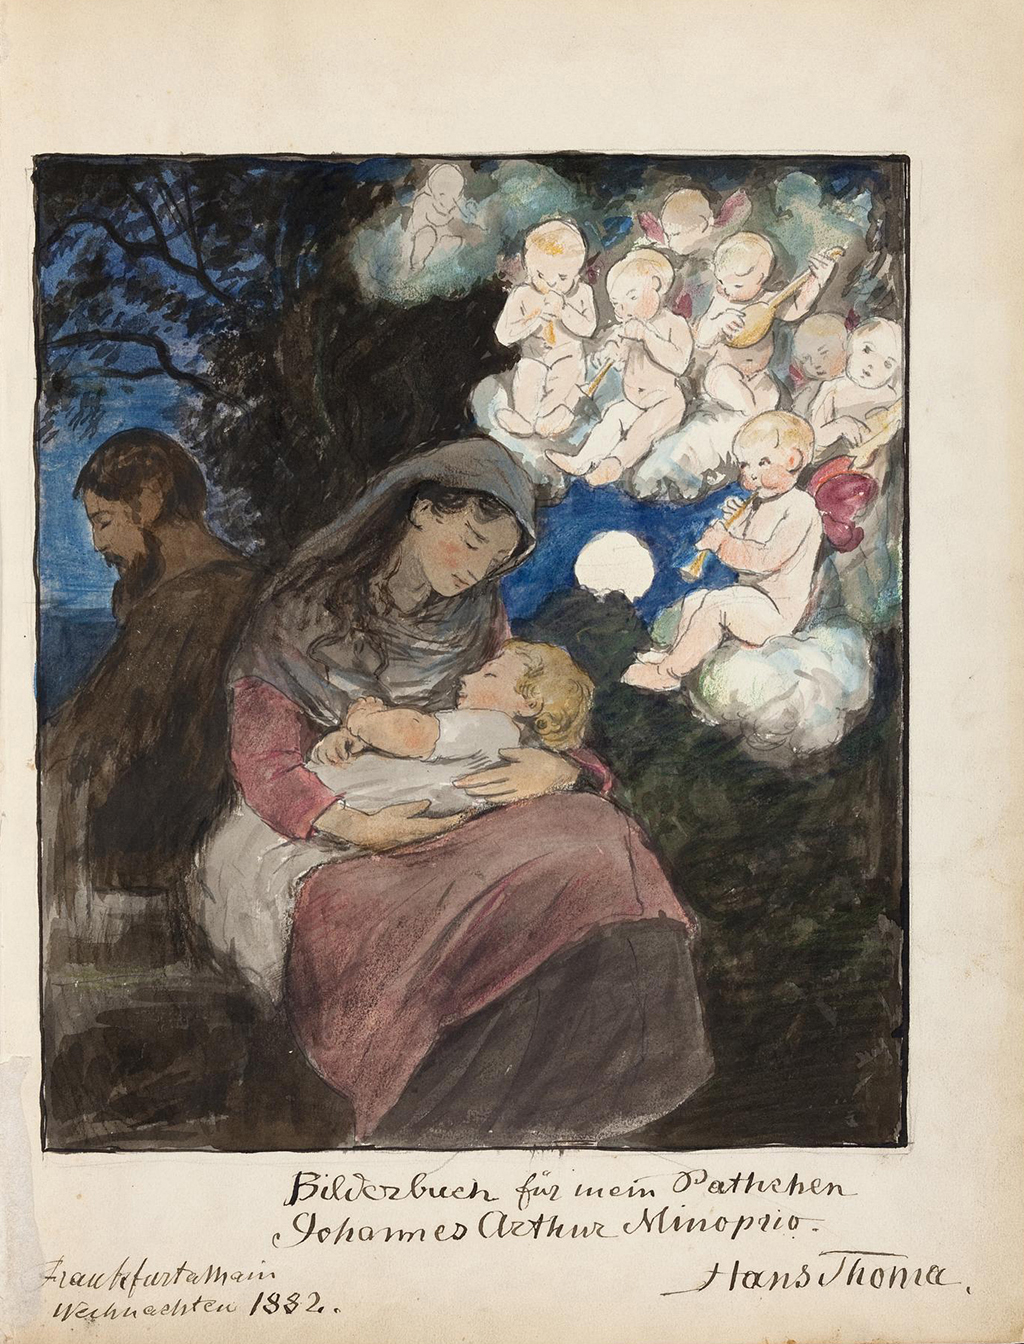 Das Weihnachtsbild aus dem Bilderbuch für sein Patenkind Johannes Arthur Minoprio von Hans Thoma zeigt die Heilige Familie: Josef Maria und das Kind und darüber eine Schar von Engeln.